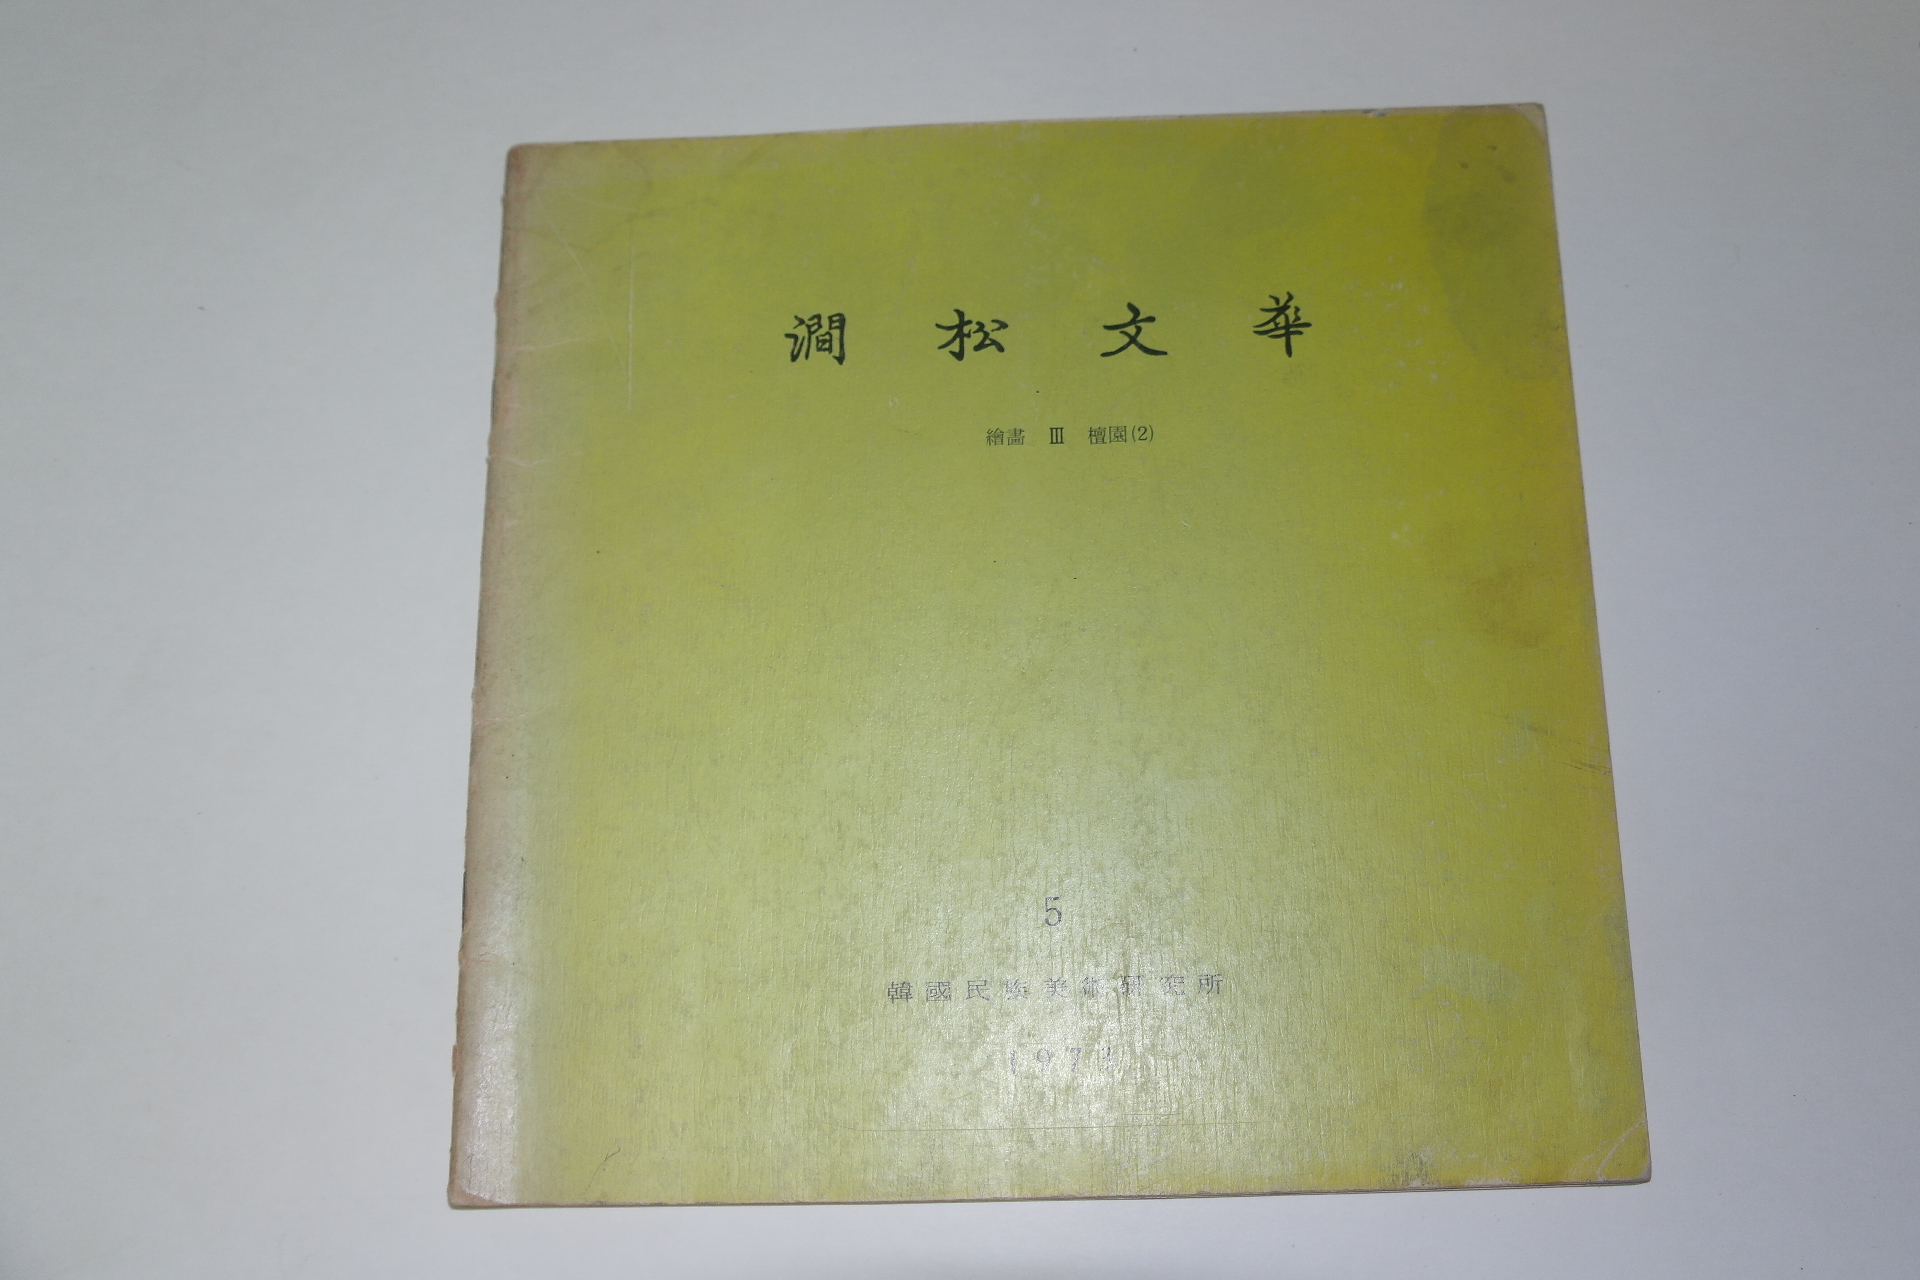 1973년 간송미술관 간송문화(澗松文華)